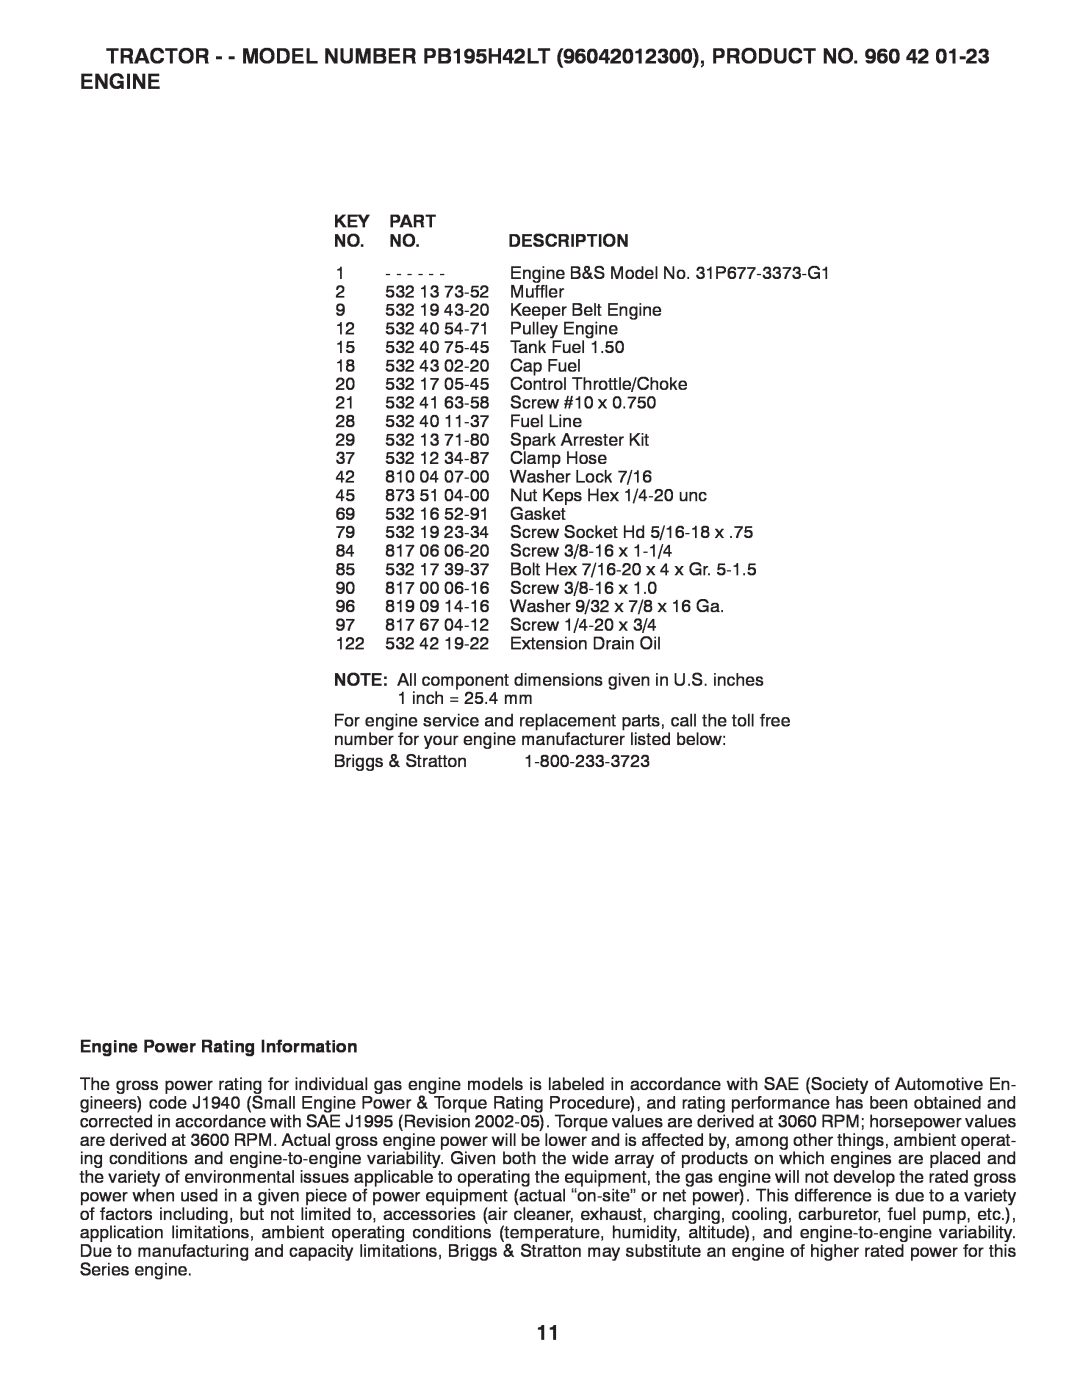 Poulan PB195H42LT manual Part, Description, Engine Power Rating Information 